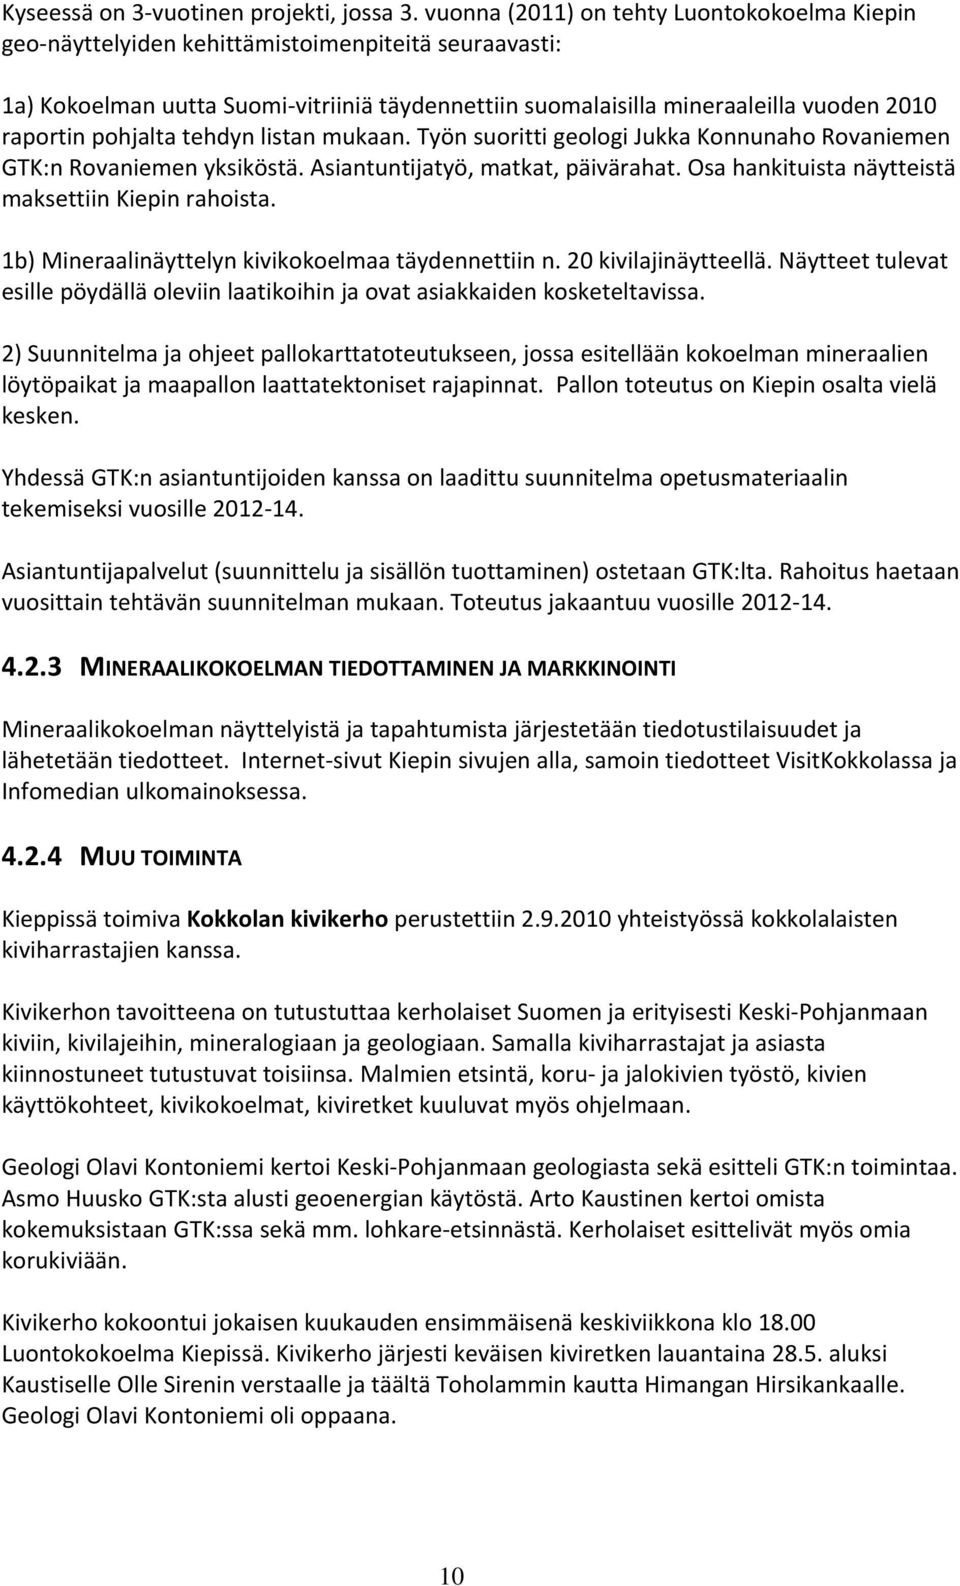 pohjalta tehdyn listan mukaan. Työn suoritti geologi Jukka Konnunaho Rovaniemen GTK:n Rovaniemen yksiköstä. Asiantuntijatyö, matkat, päivärahat. Osa hankituista näytteistä maksettiin Kiepin rahoista.